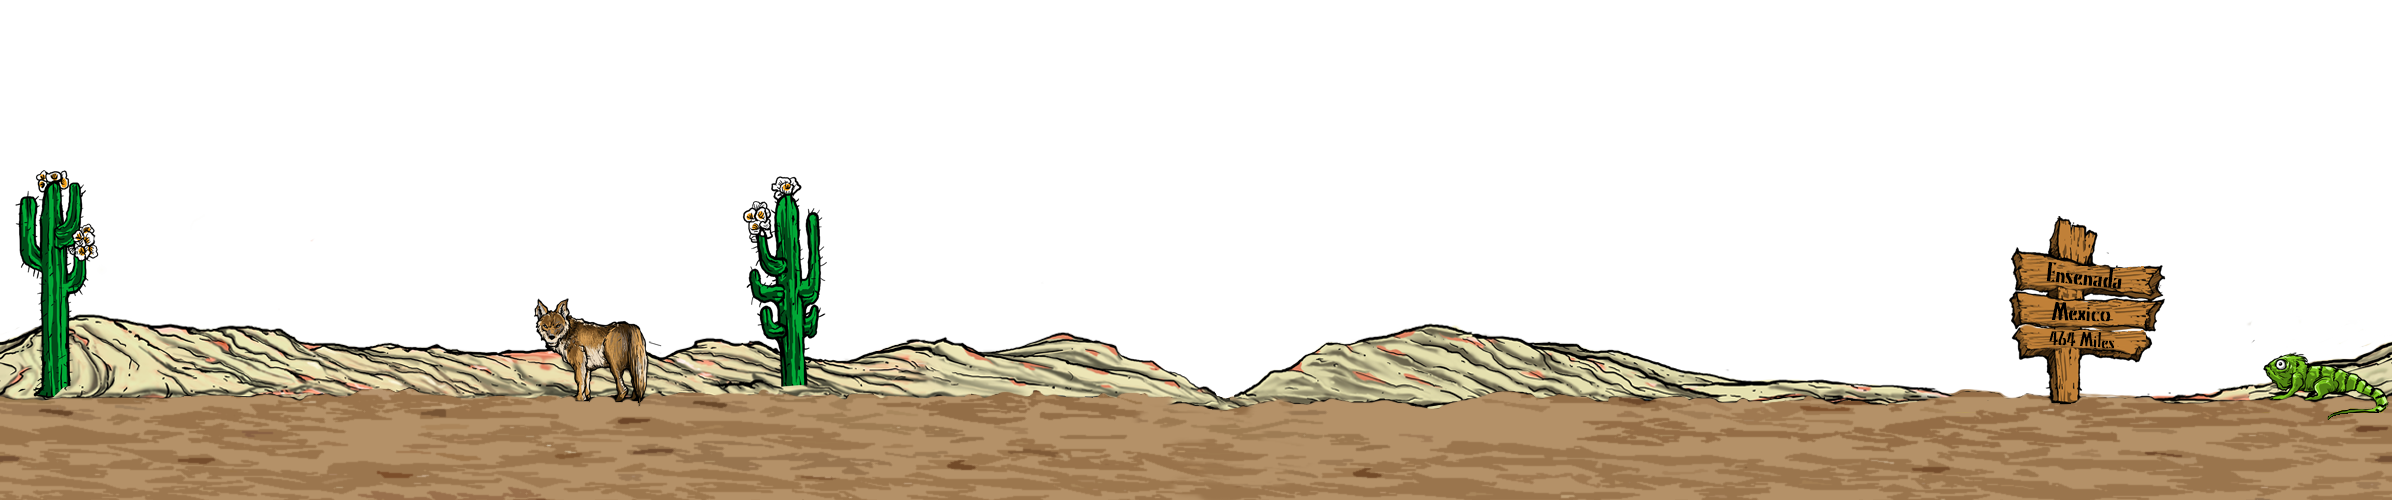 desert clipart sand hill